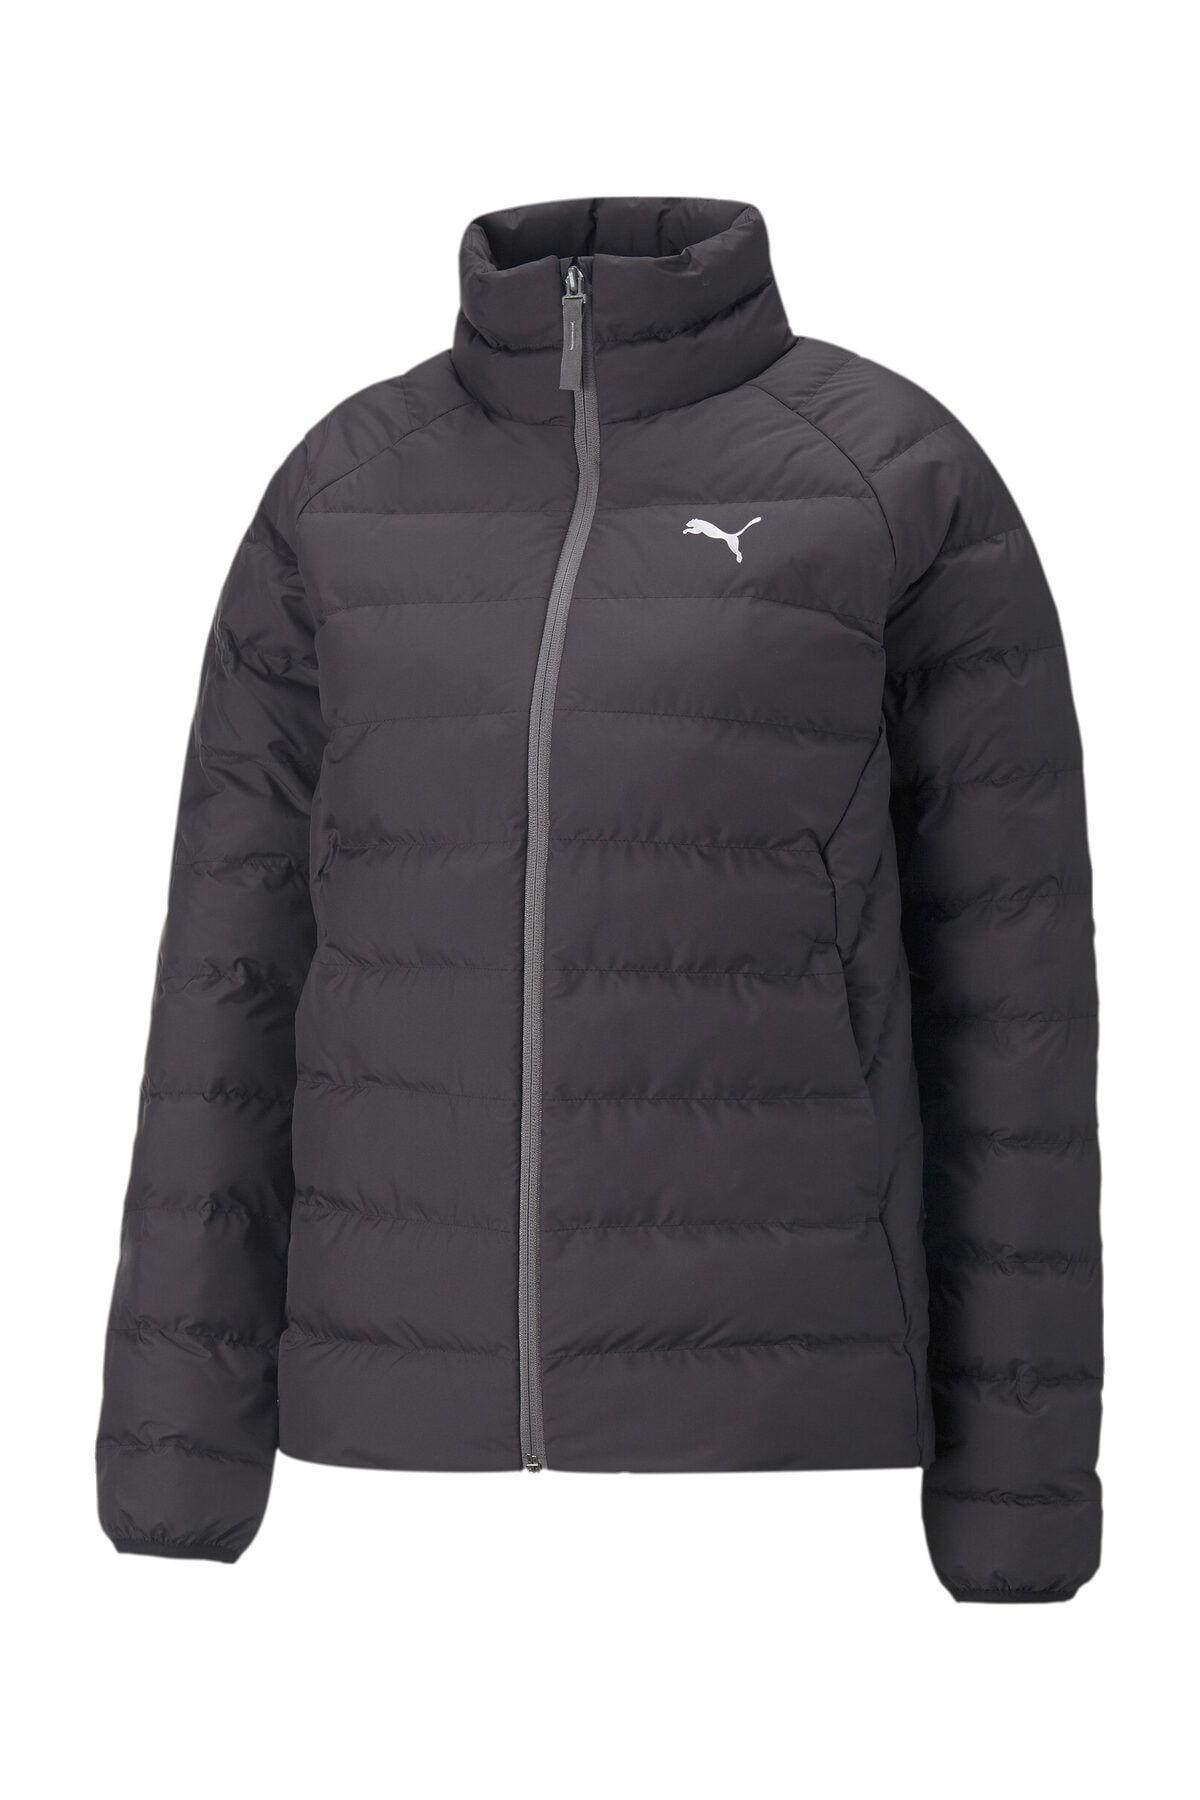 Puma - - Trendyol Coat-Jacket Jacket Active Polyball Sports Black